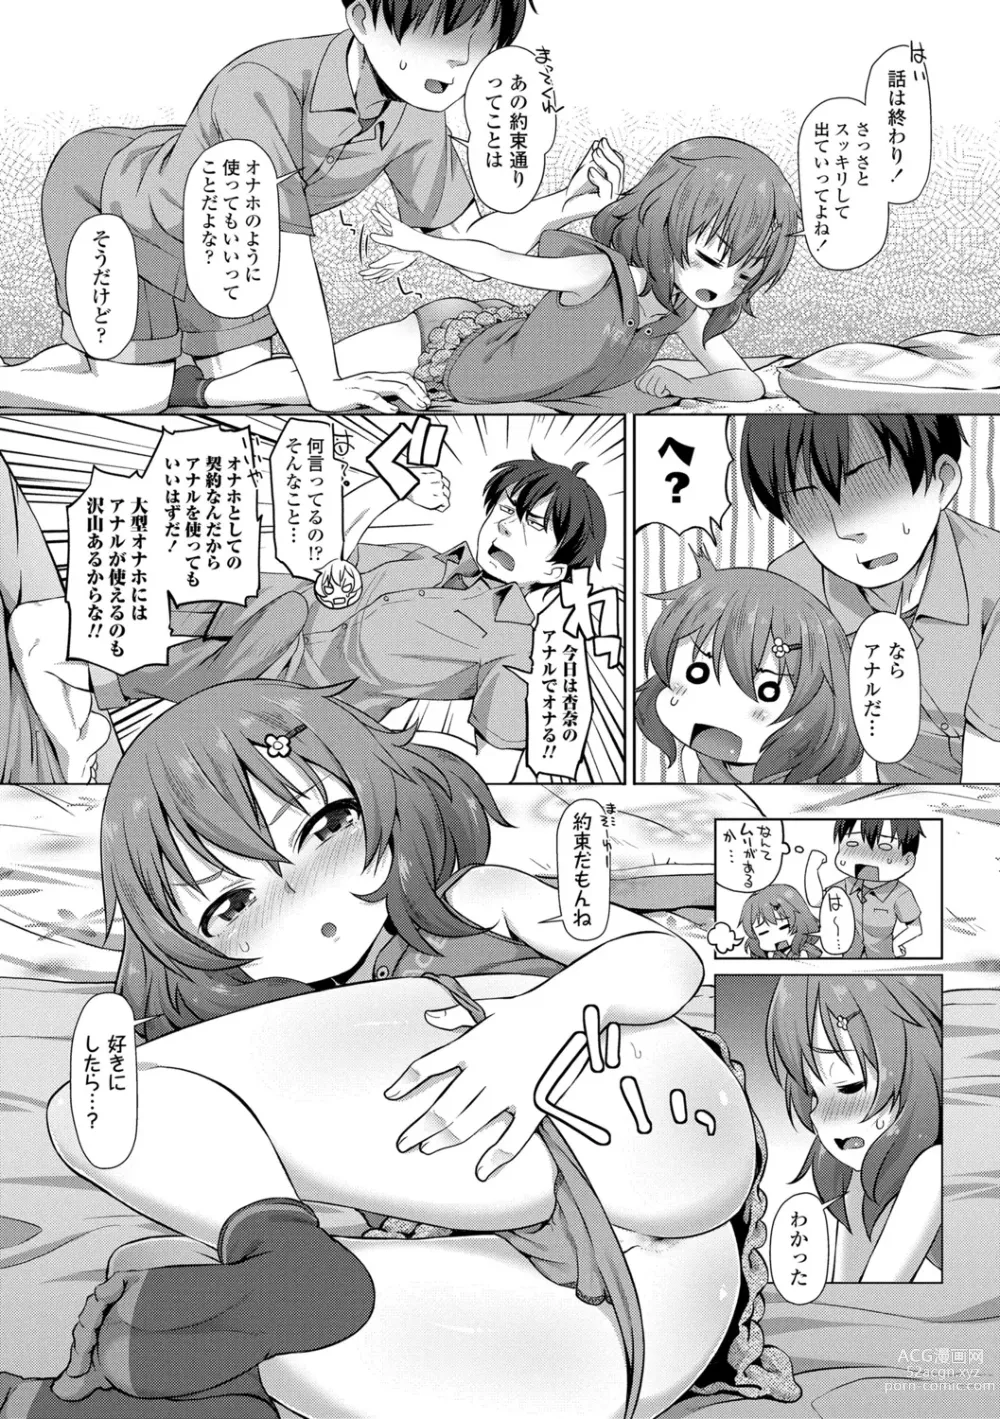 Page 9 of manga Chiisai Ana wa Dou desu ka?